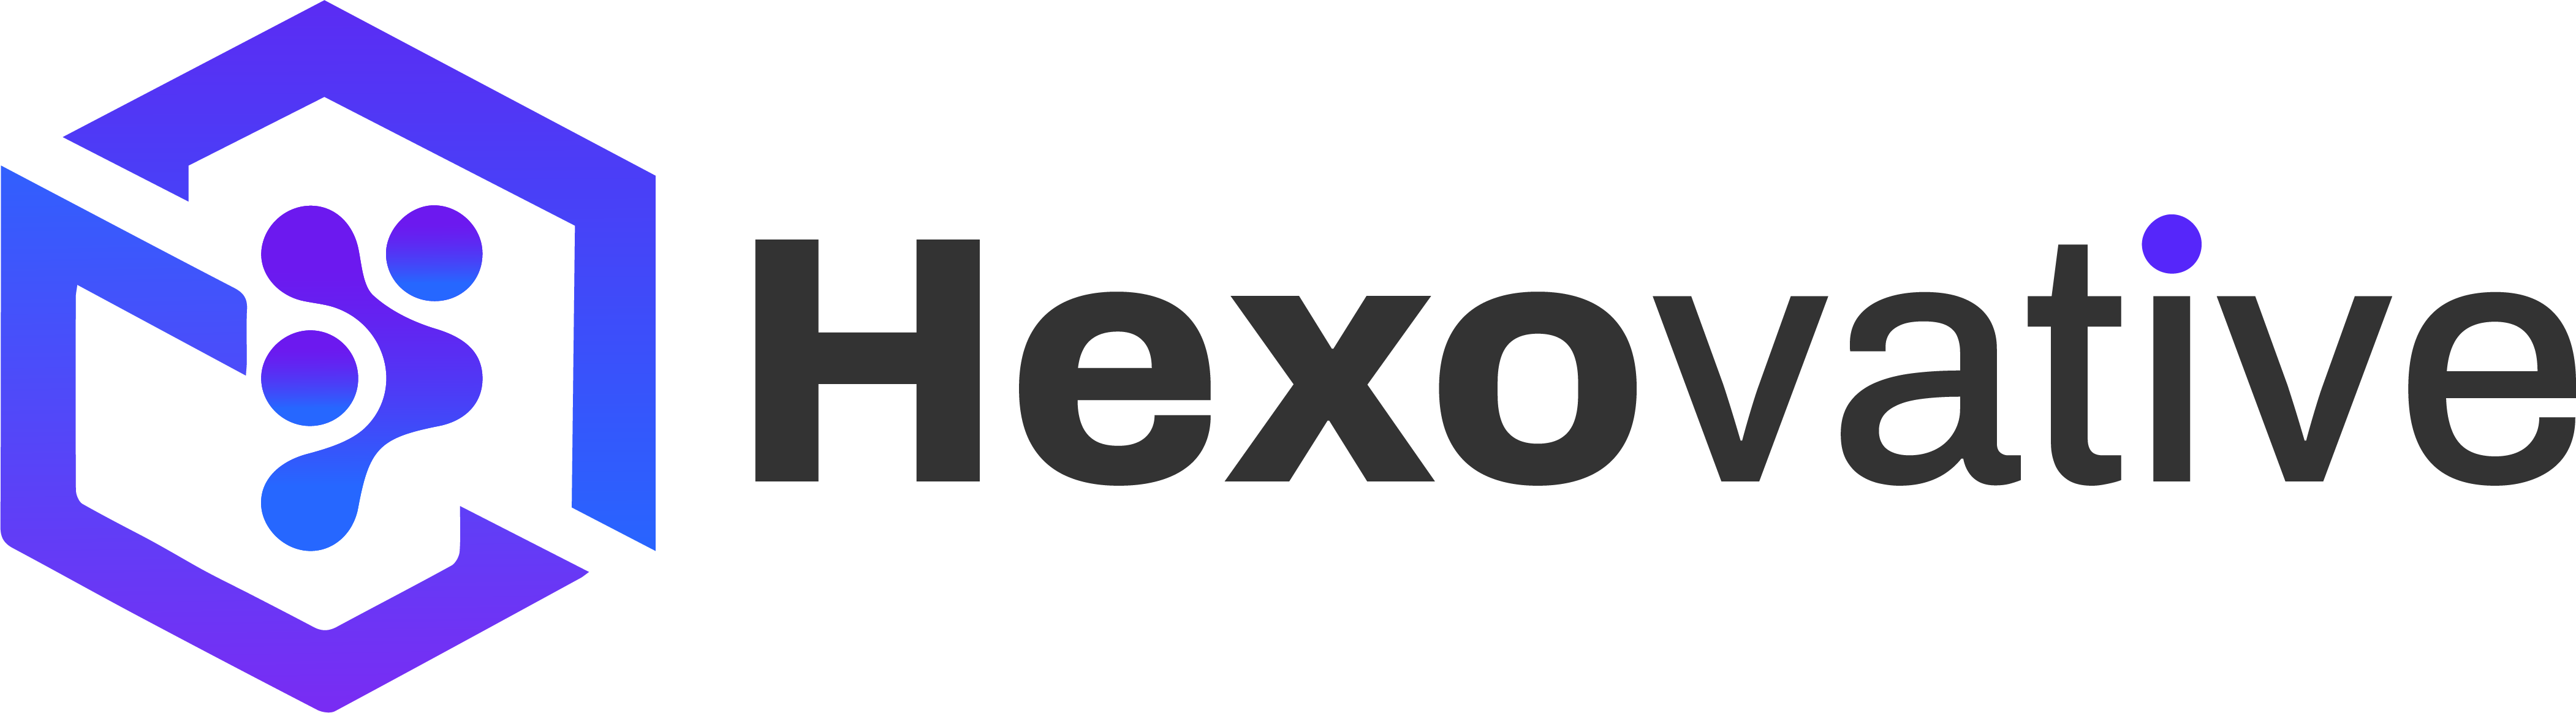 hexovative-logo